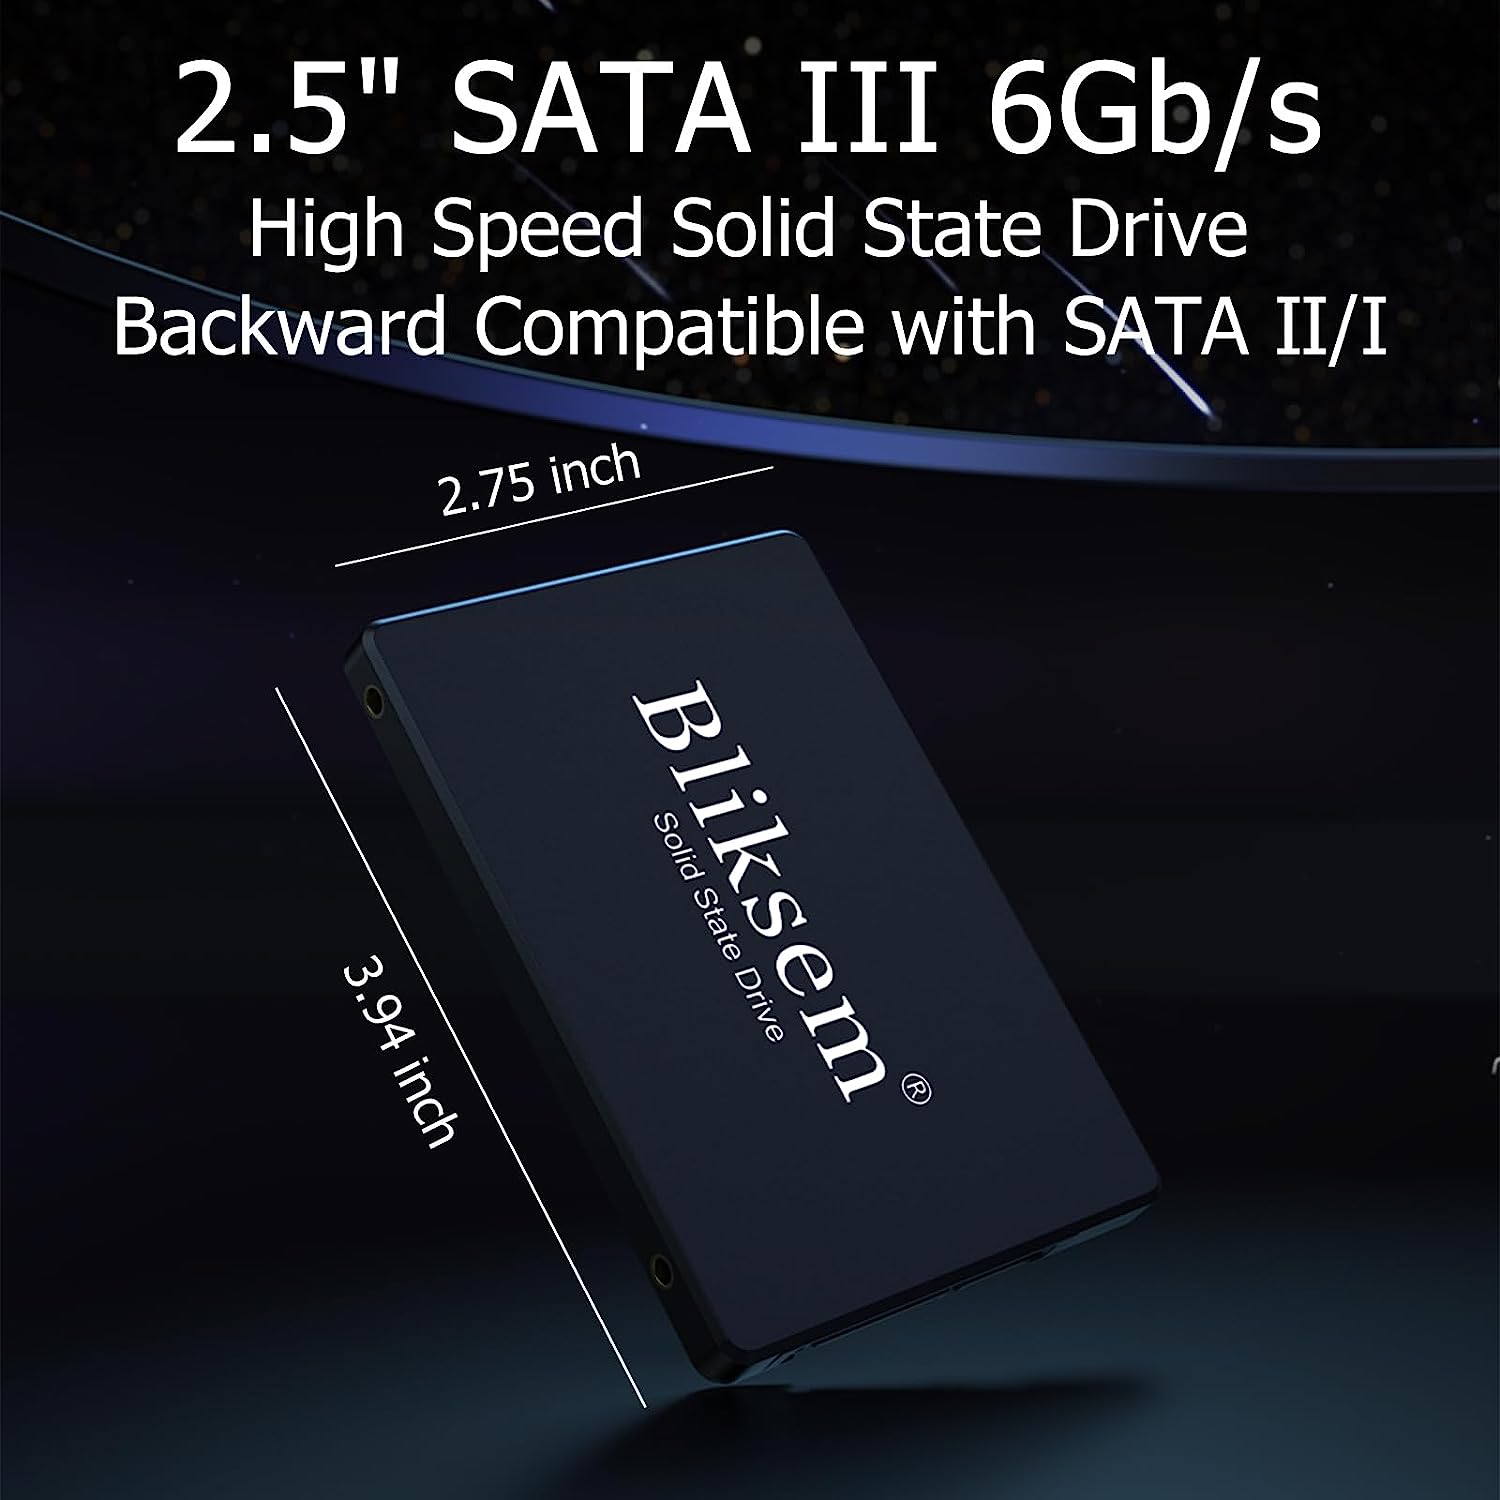 Bliksem SSD 240GB SATA III 6Gb/s Unidad interna de estado s Foto 7164625-J2.jpg